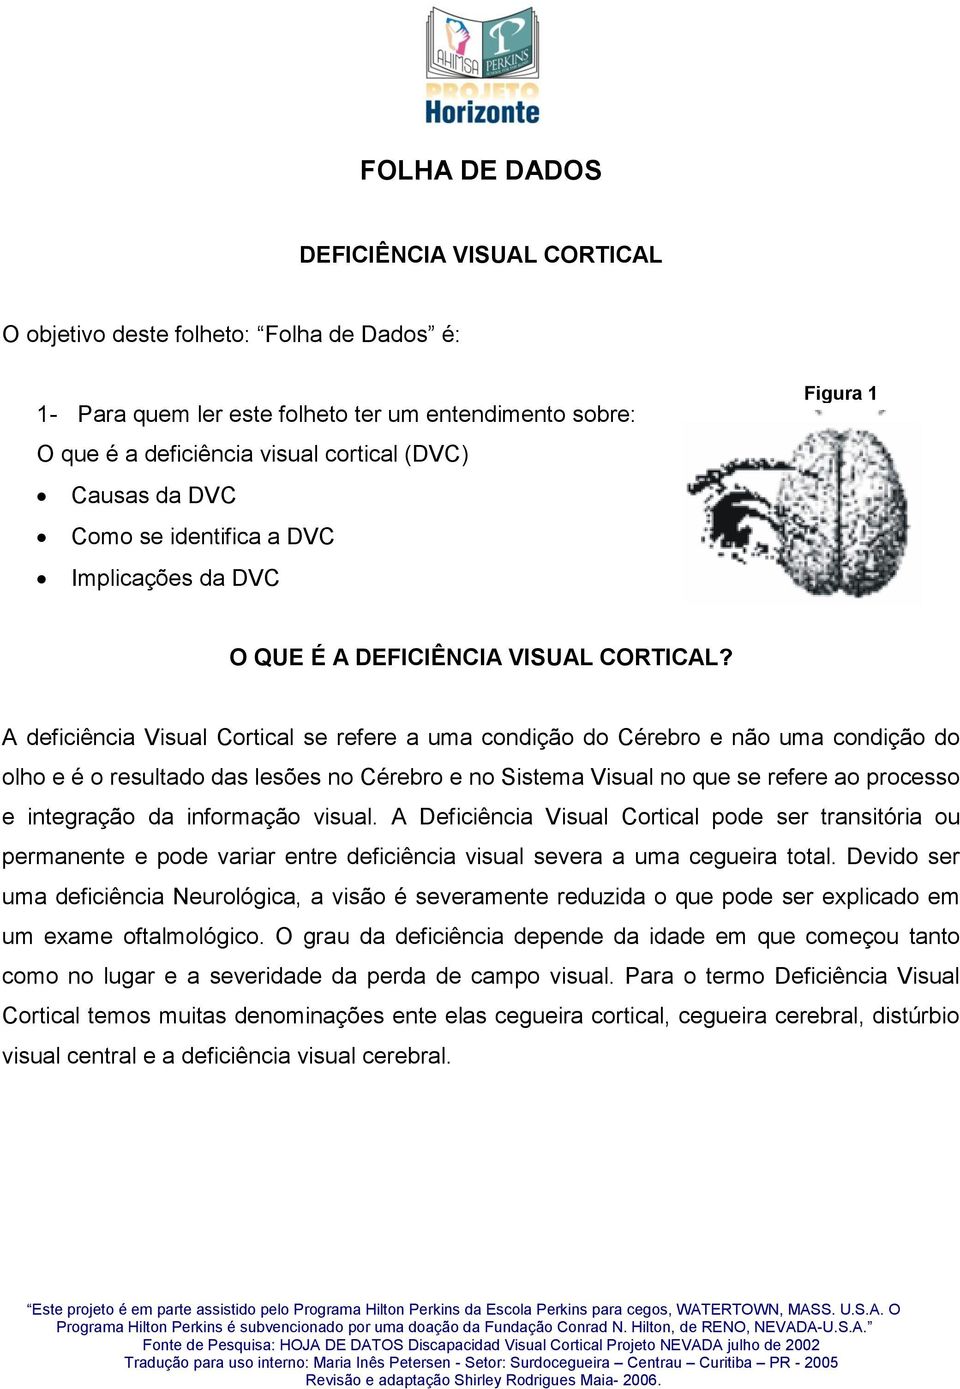 A deficiência Visual Cortical se refere a uma condição do Cérebro e não uma condição do olho e é o resultado das lesões no Cérebro e no Sistema Visual no que se refere ao processo e integração da